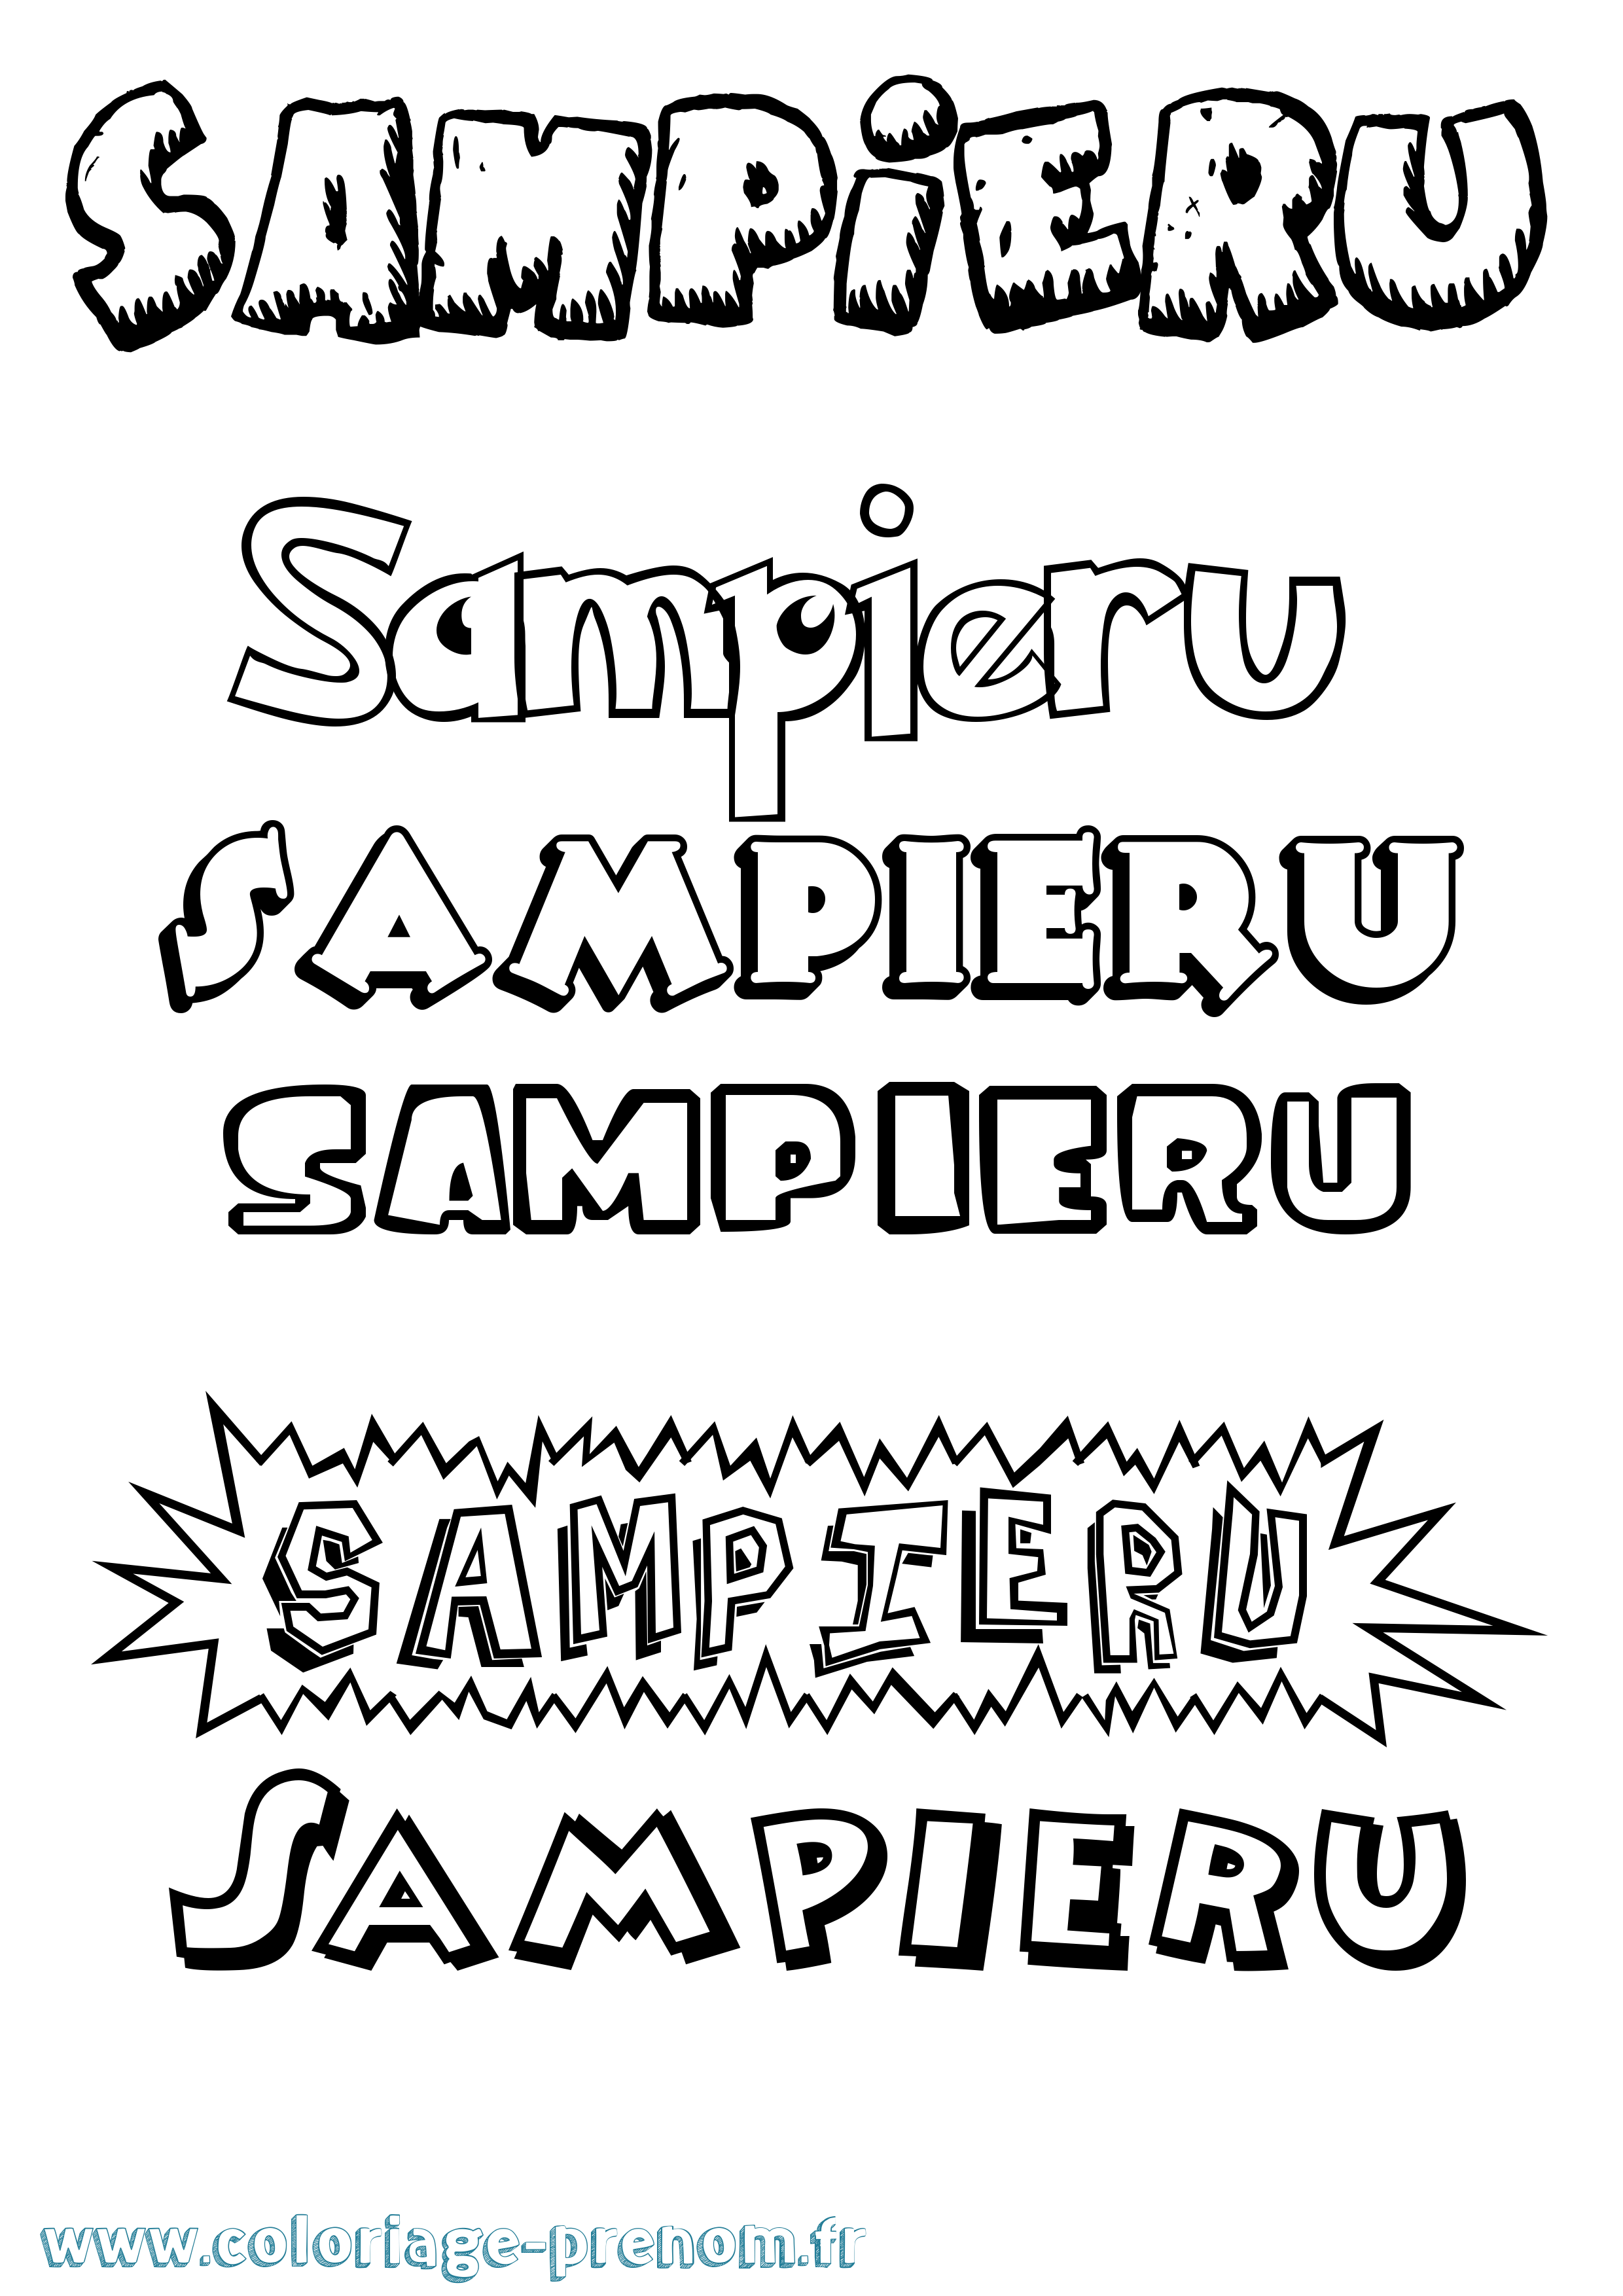 Coloriage prénom Sampieru Dessin Animé